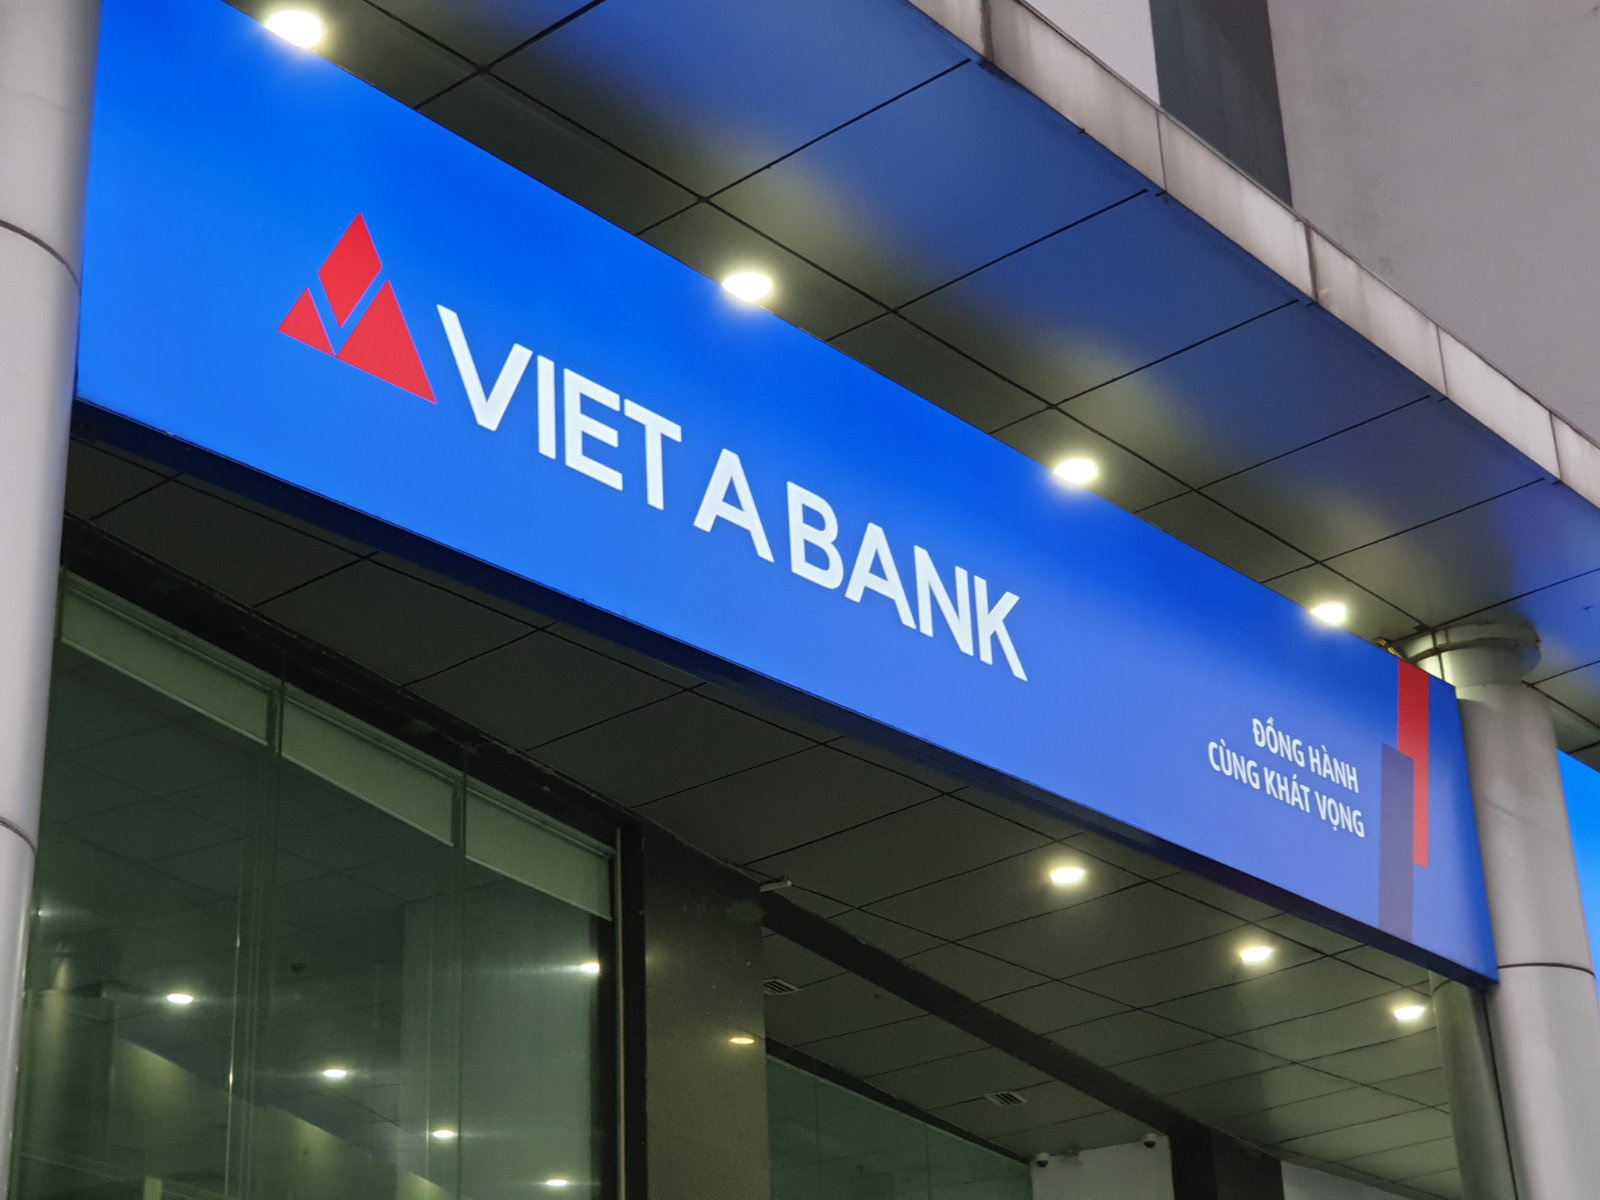 Ngân hàng VietABank lên sàn chứng khoán với mã giao dịch VAB